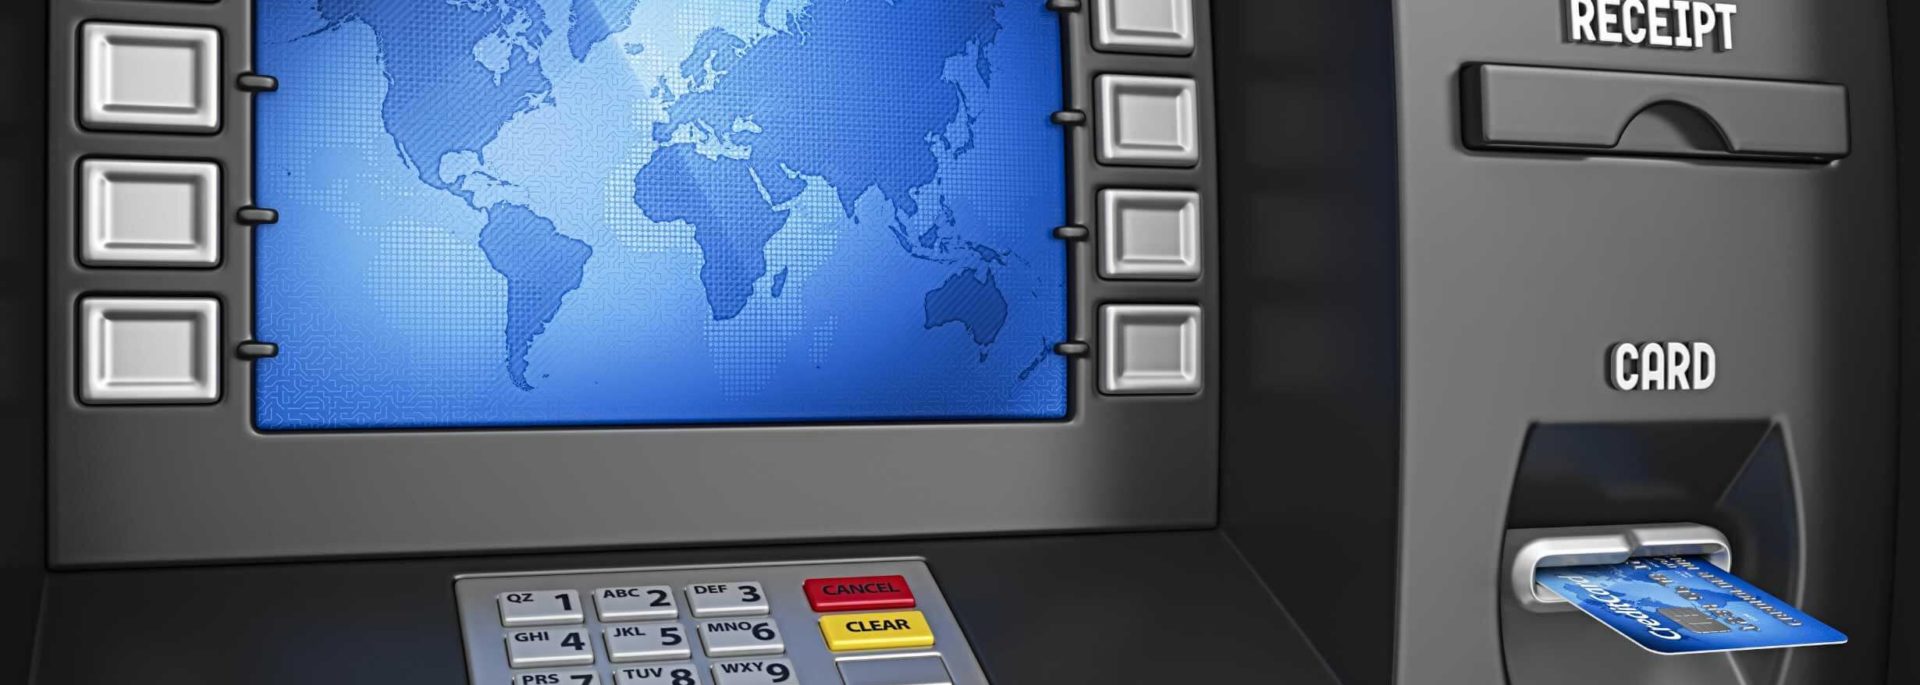 Türkiye'de ATM'lerin elektrik tüketimi 4 ili geride bıraktı